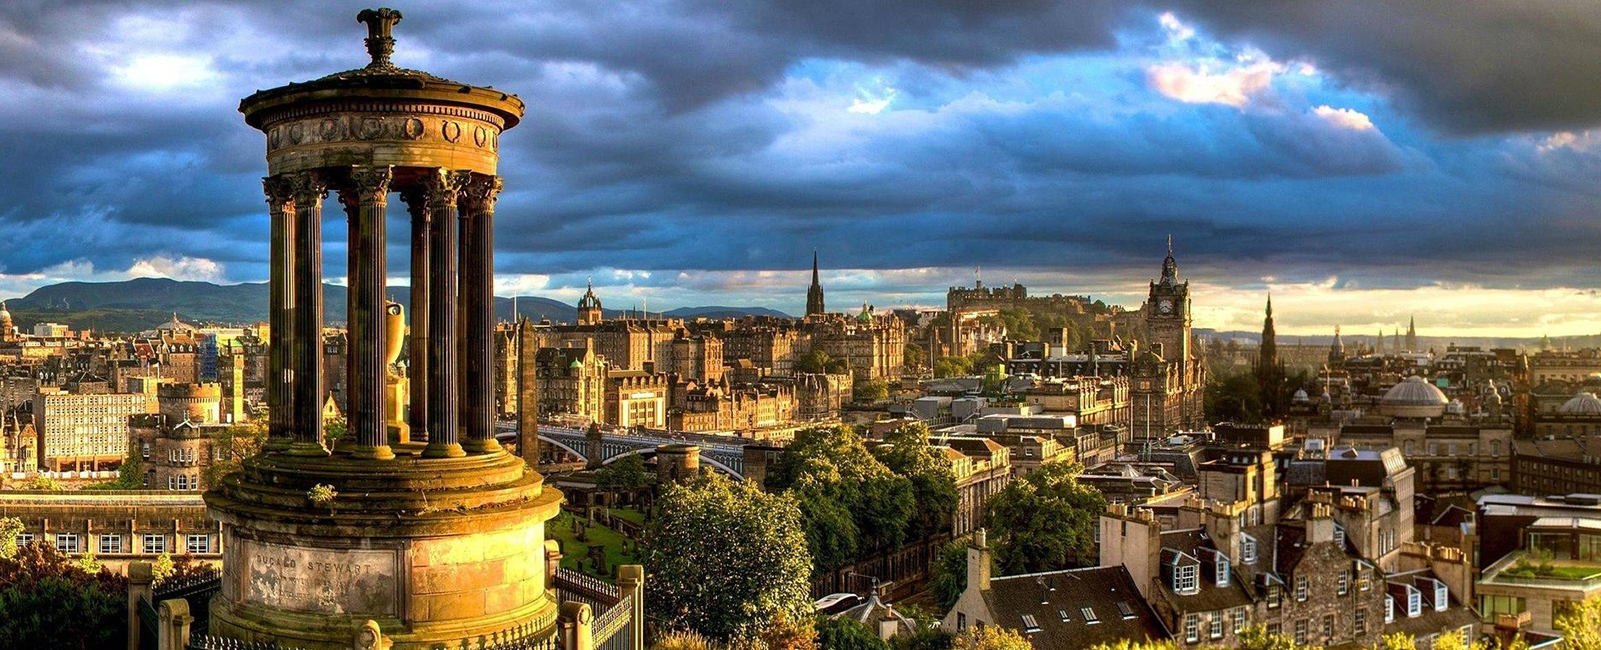 Edinburgh, Scotland Cityscape